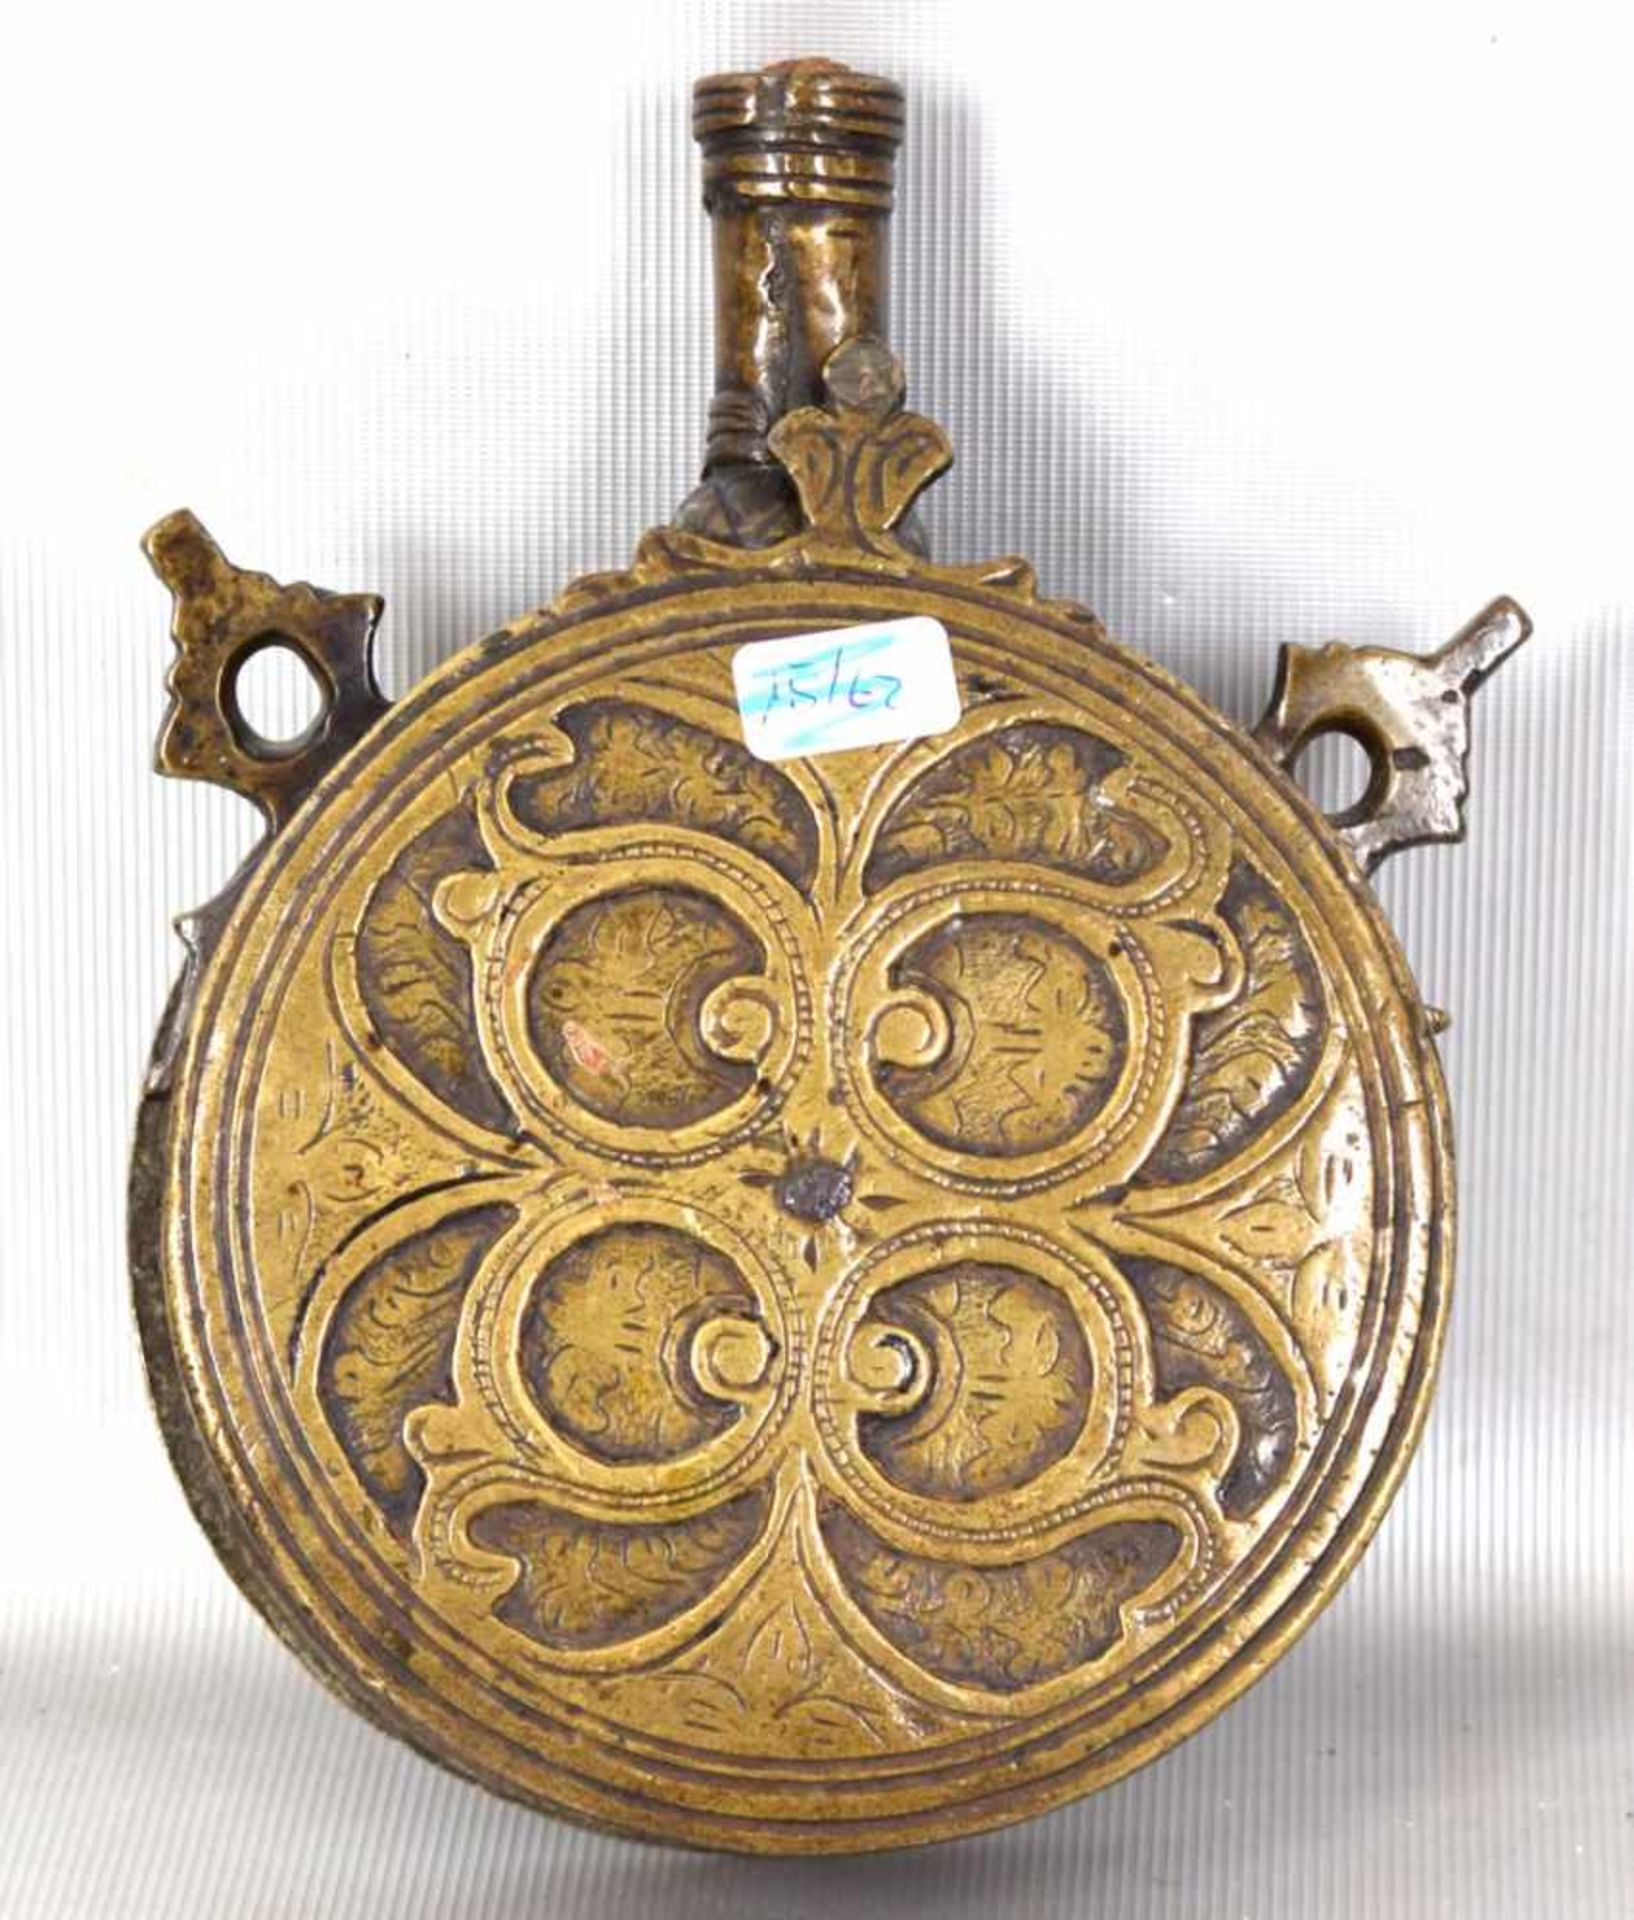 Pulverflasche orientalisch, Messing, aufwendig verziert, H 15 cm, 19. Jh.